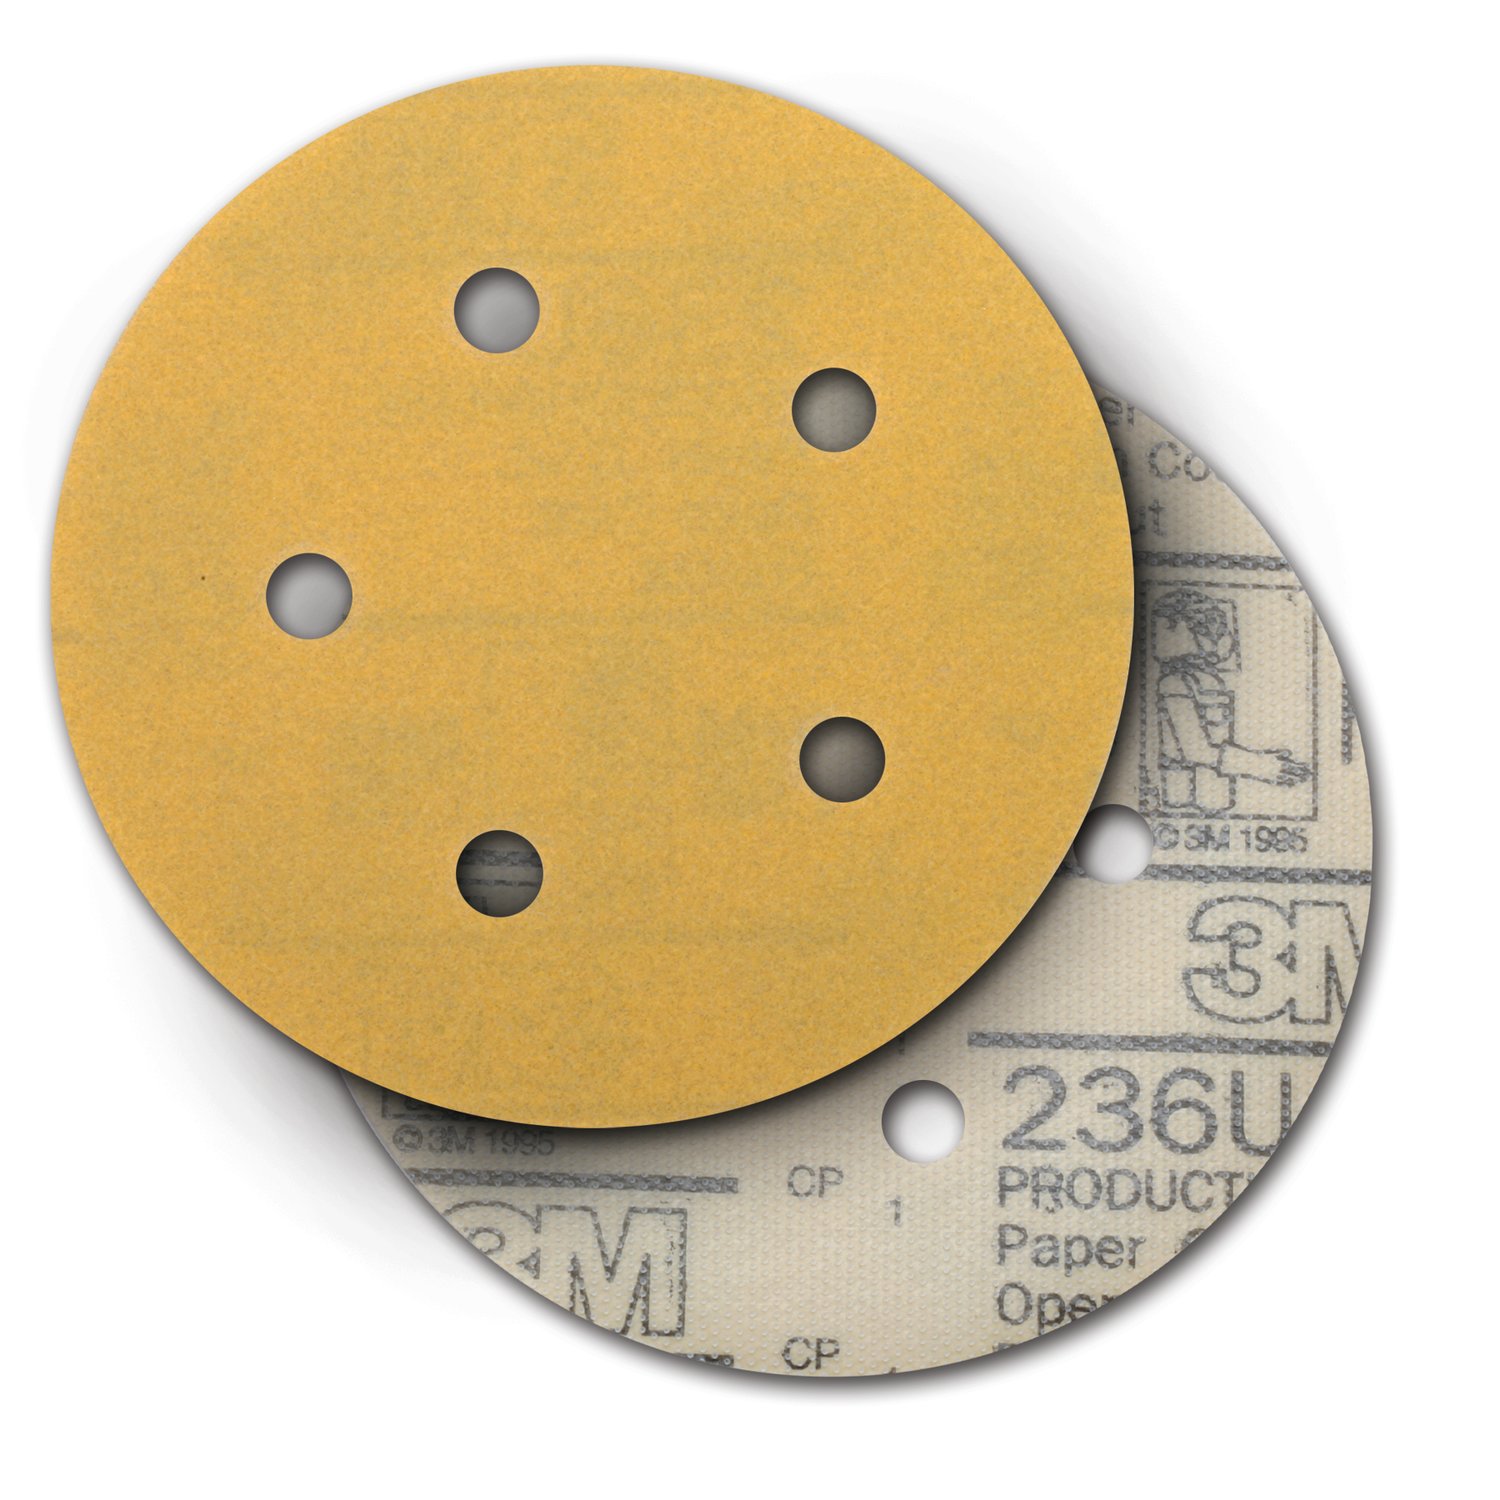 7100221281 - 3M Hookit Paper Disc 236U, P80 C-weight, 5 in x NH, D/F 5HL, Die
500FH, 50/Carton, 250 ea/Case